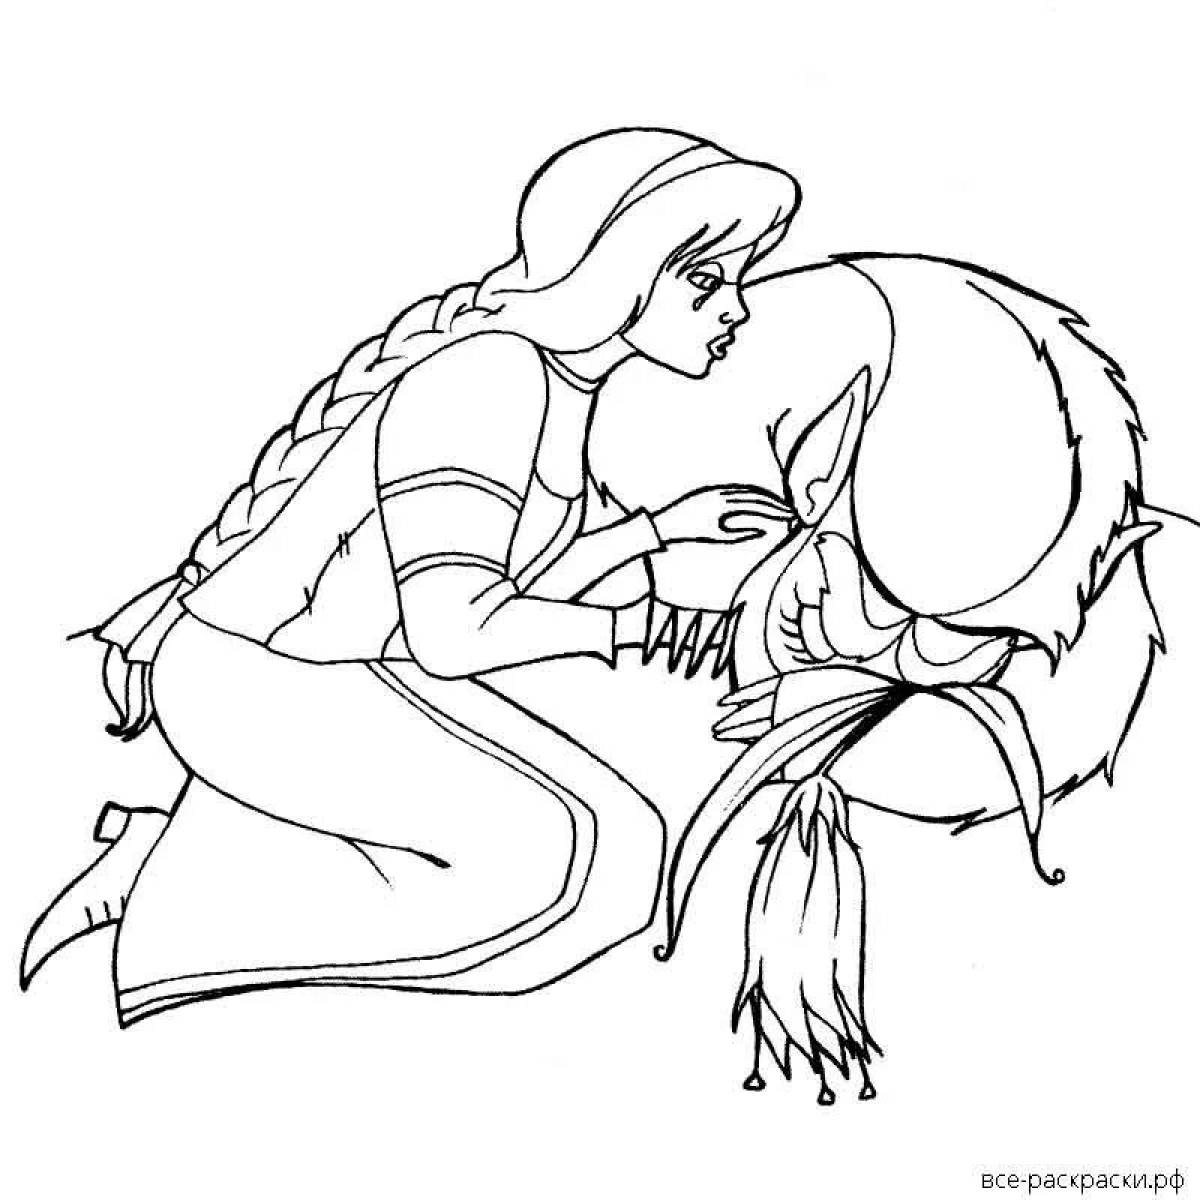 Иллюстрация к сказке Аленький цветочек Аксаков раскраска